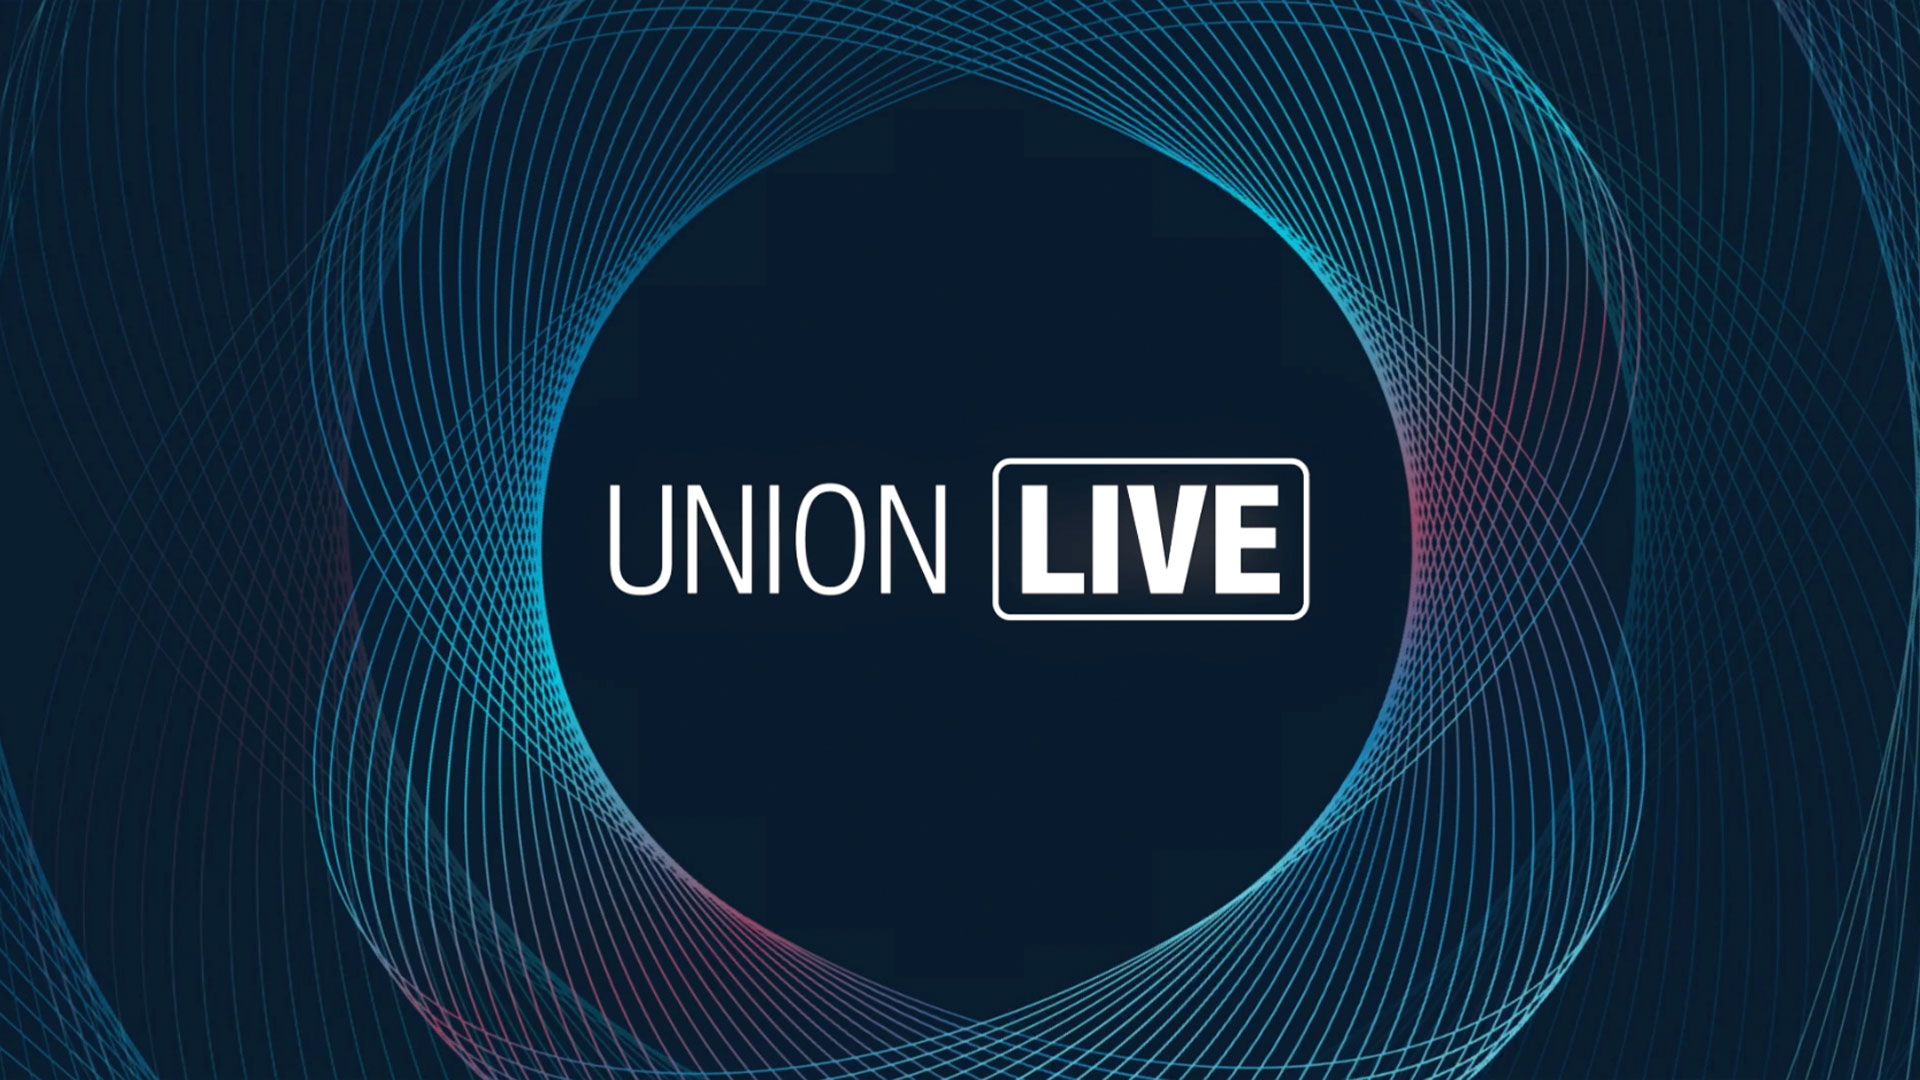 The Union Live